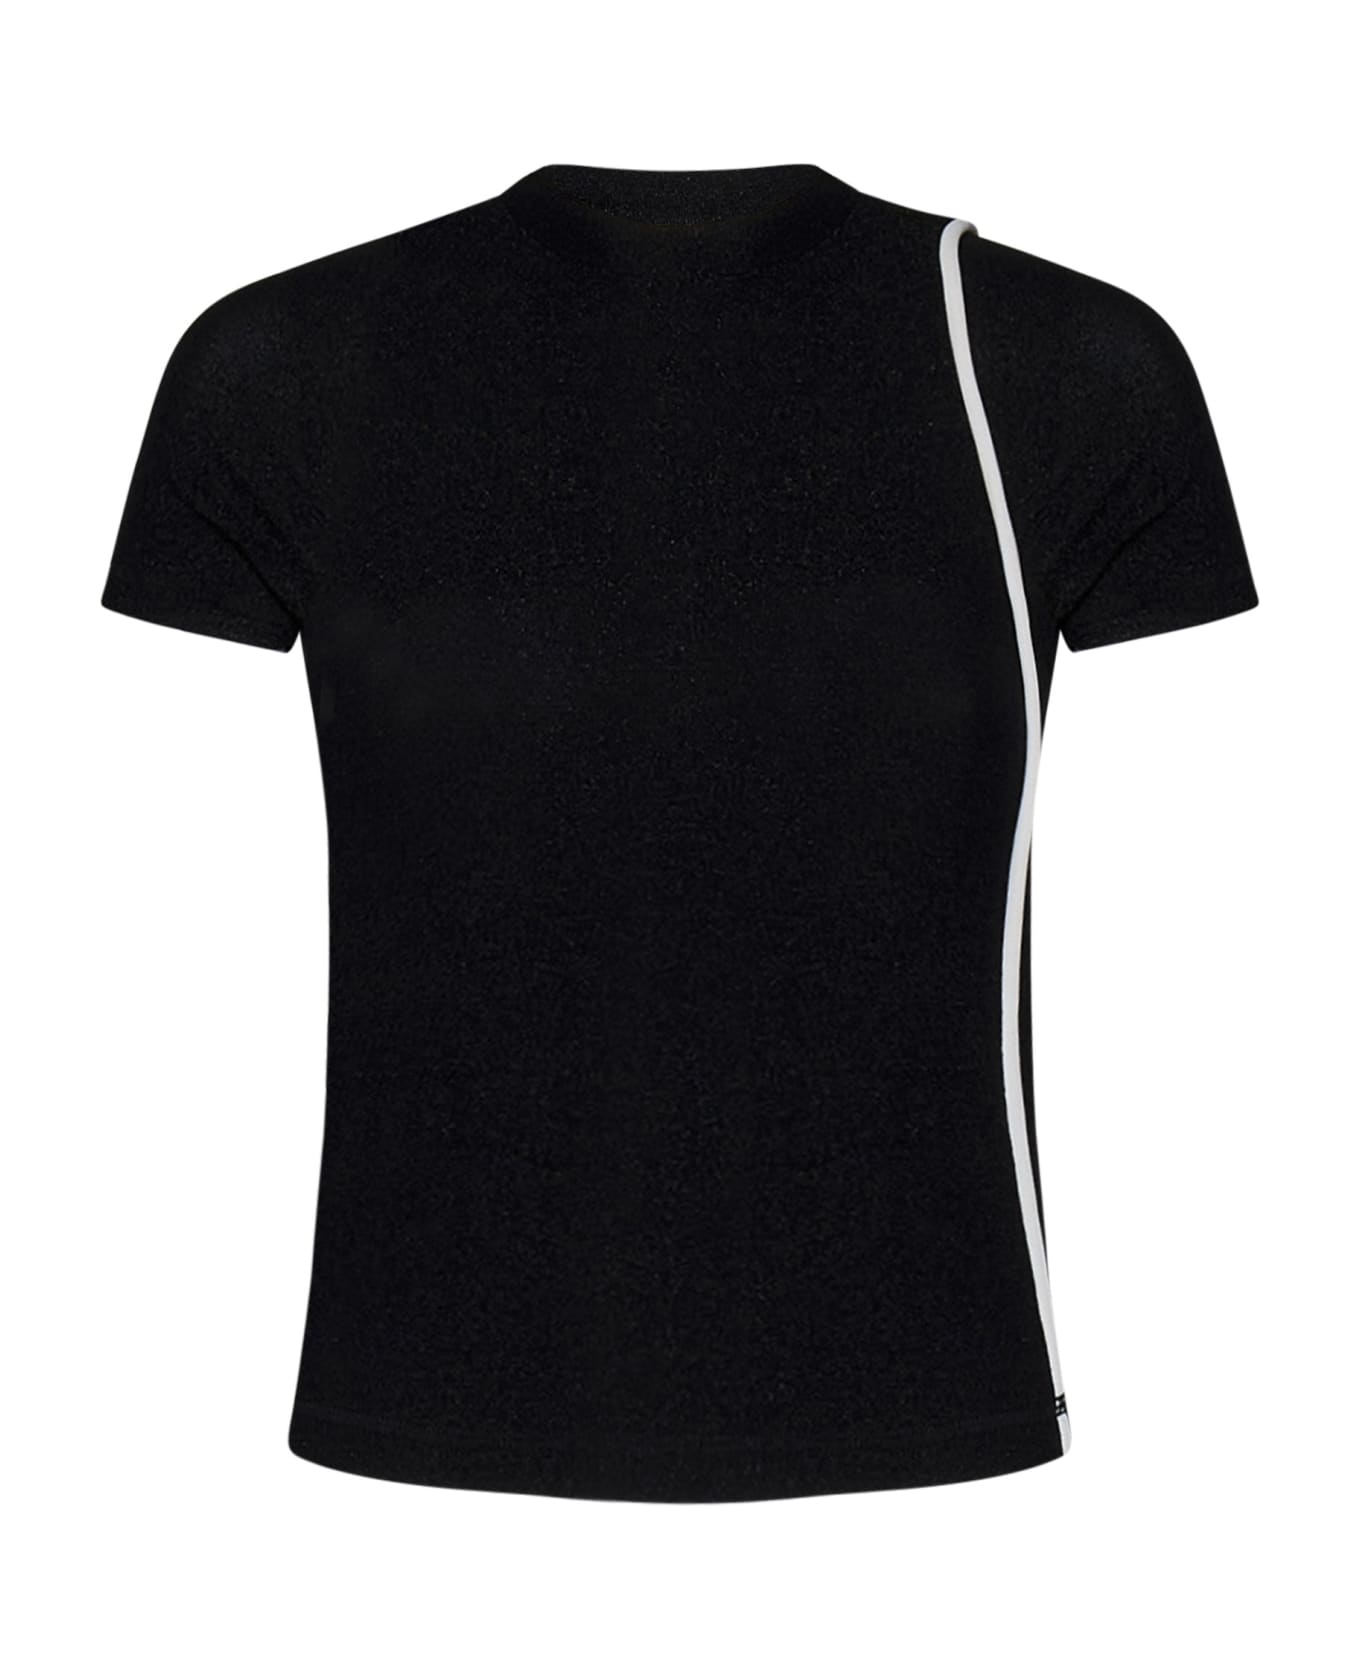 Ottolinger T-shirt - Black